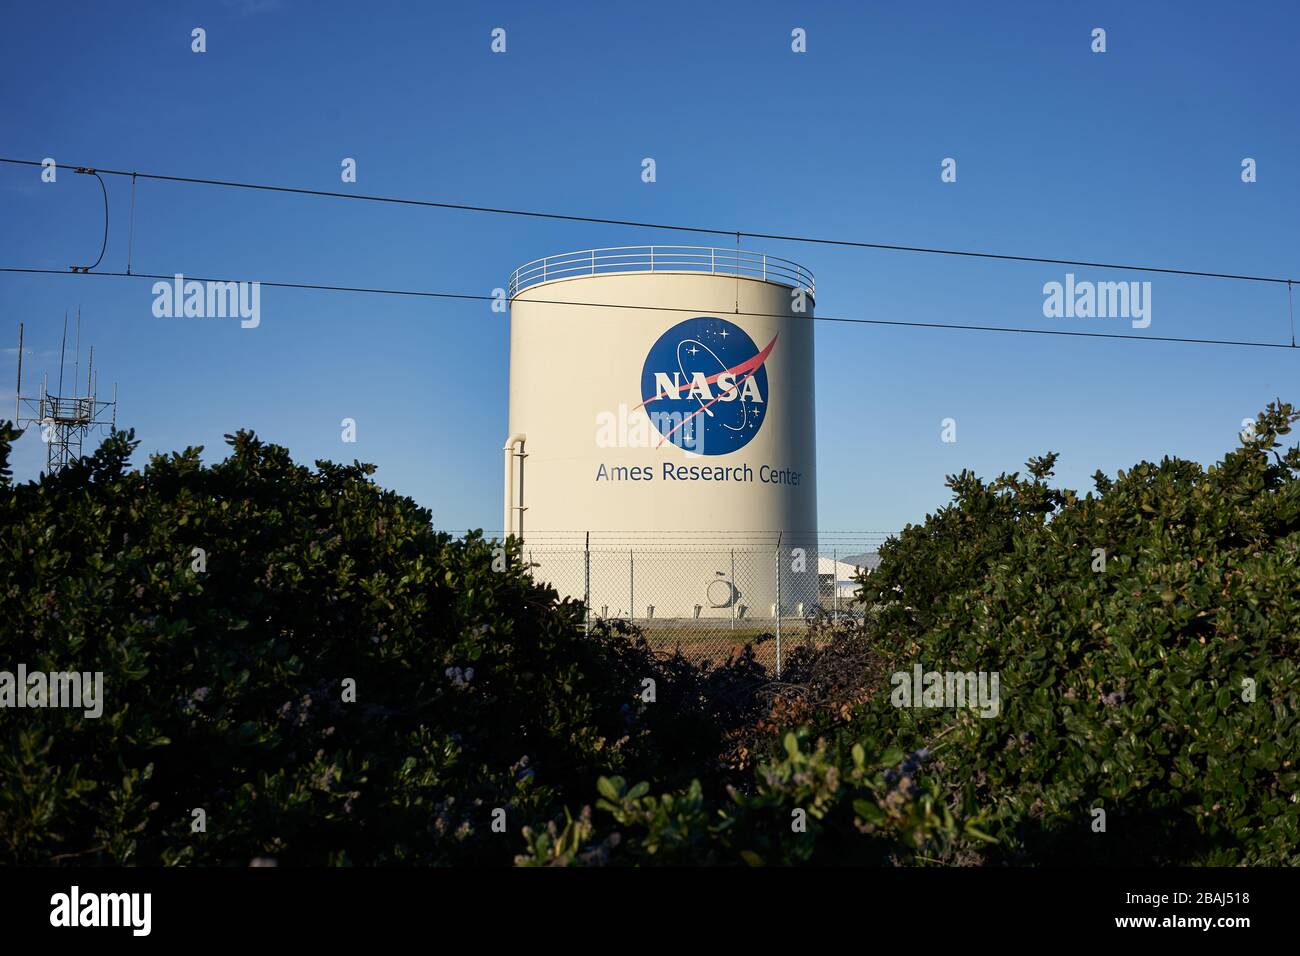 Das NASA Ames Research Center, ein wichtiges NASA-Forschungszentrum auf dem Moffett Federal Airfield in Mountain View, Kalifornien, gesehen am Montag, 2. März 2020. Stockfoto